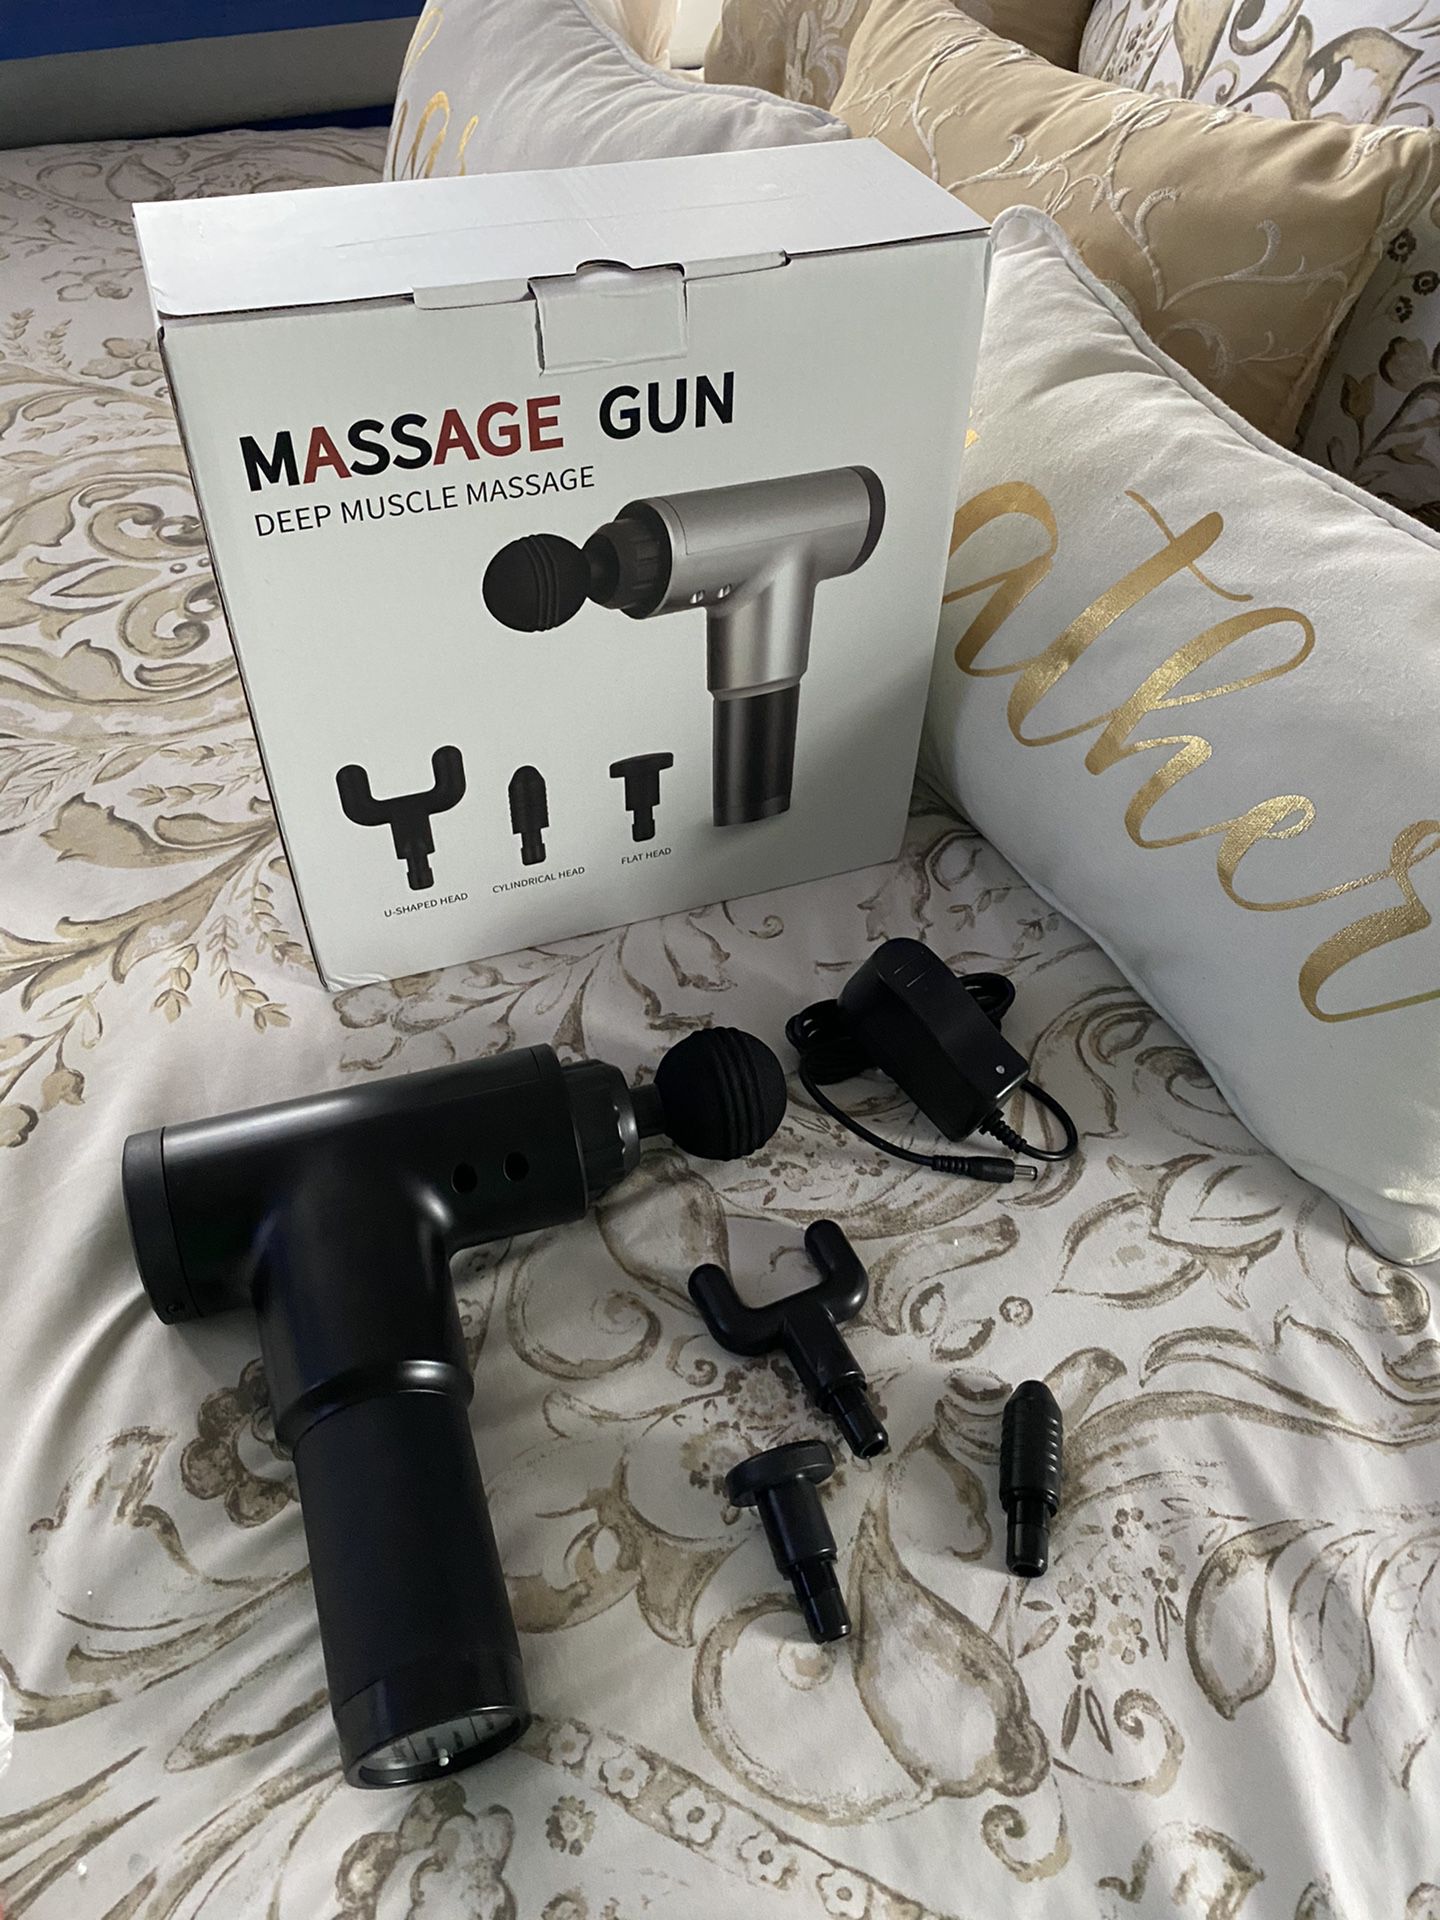 Massage gun new